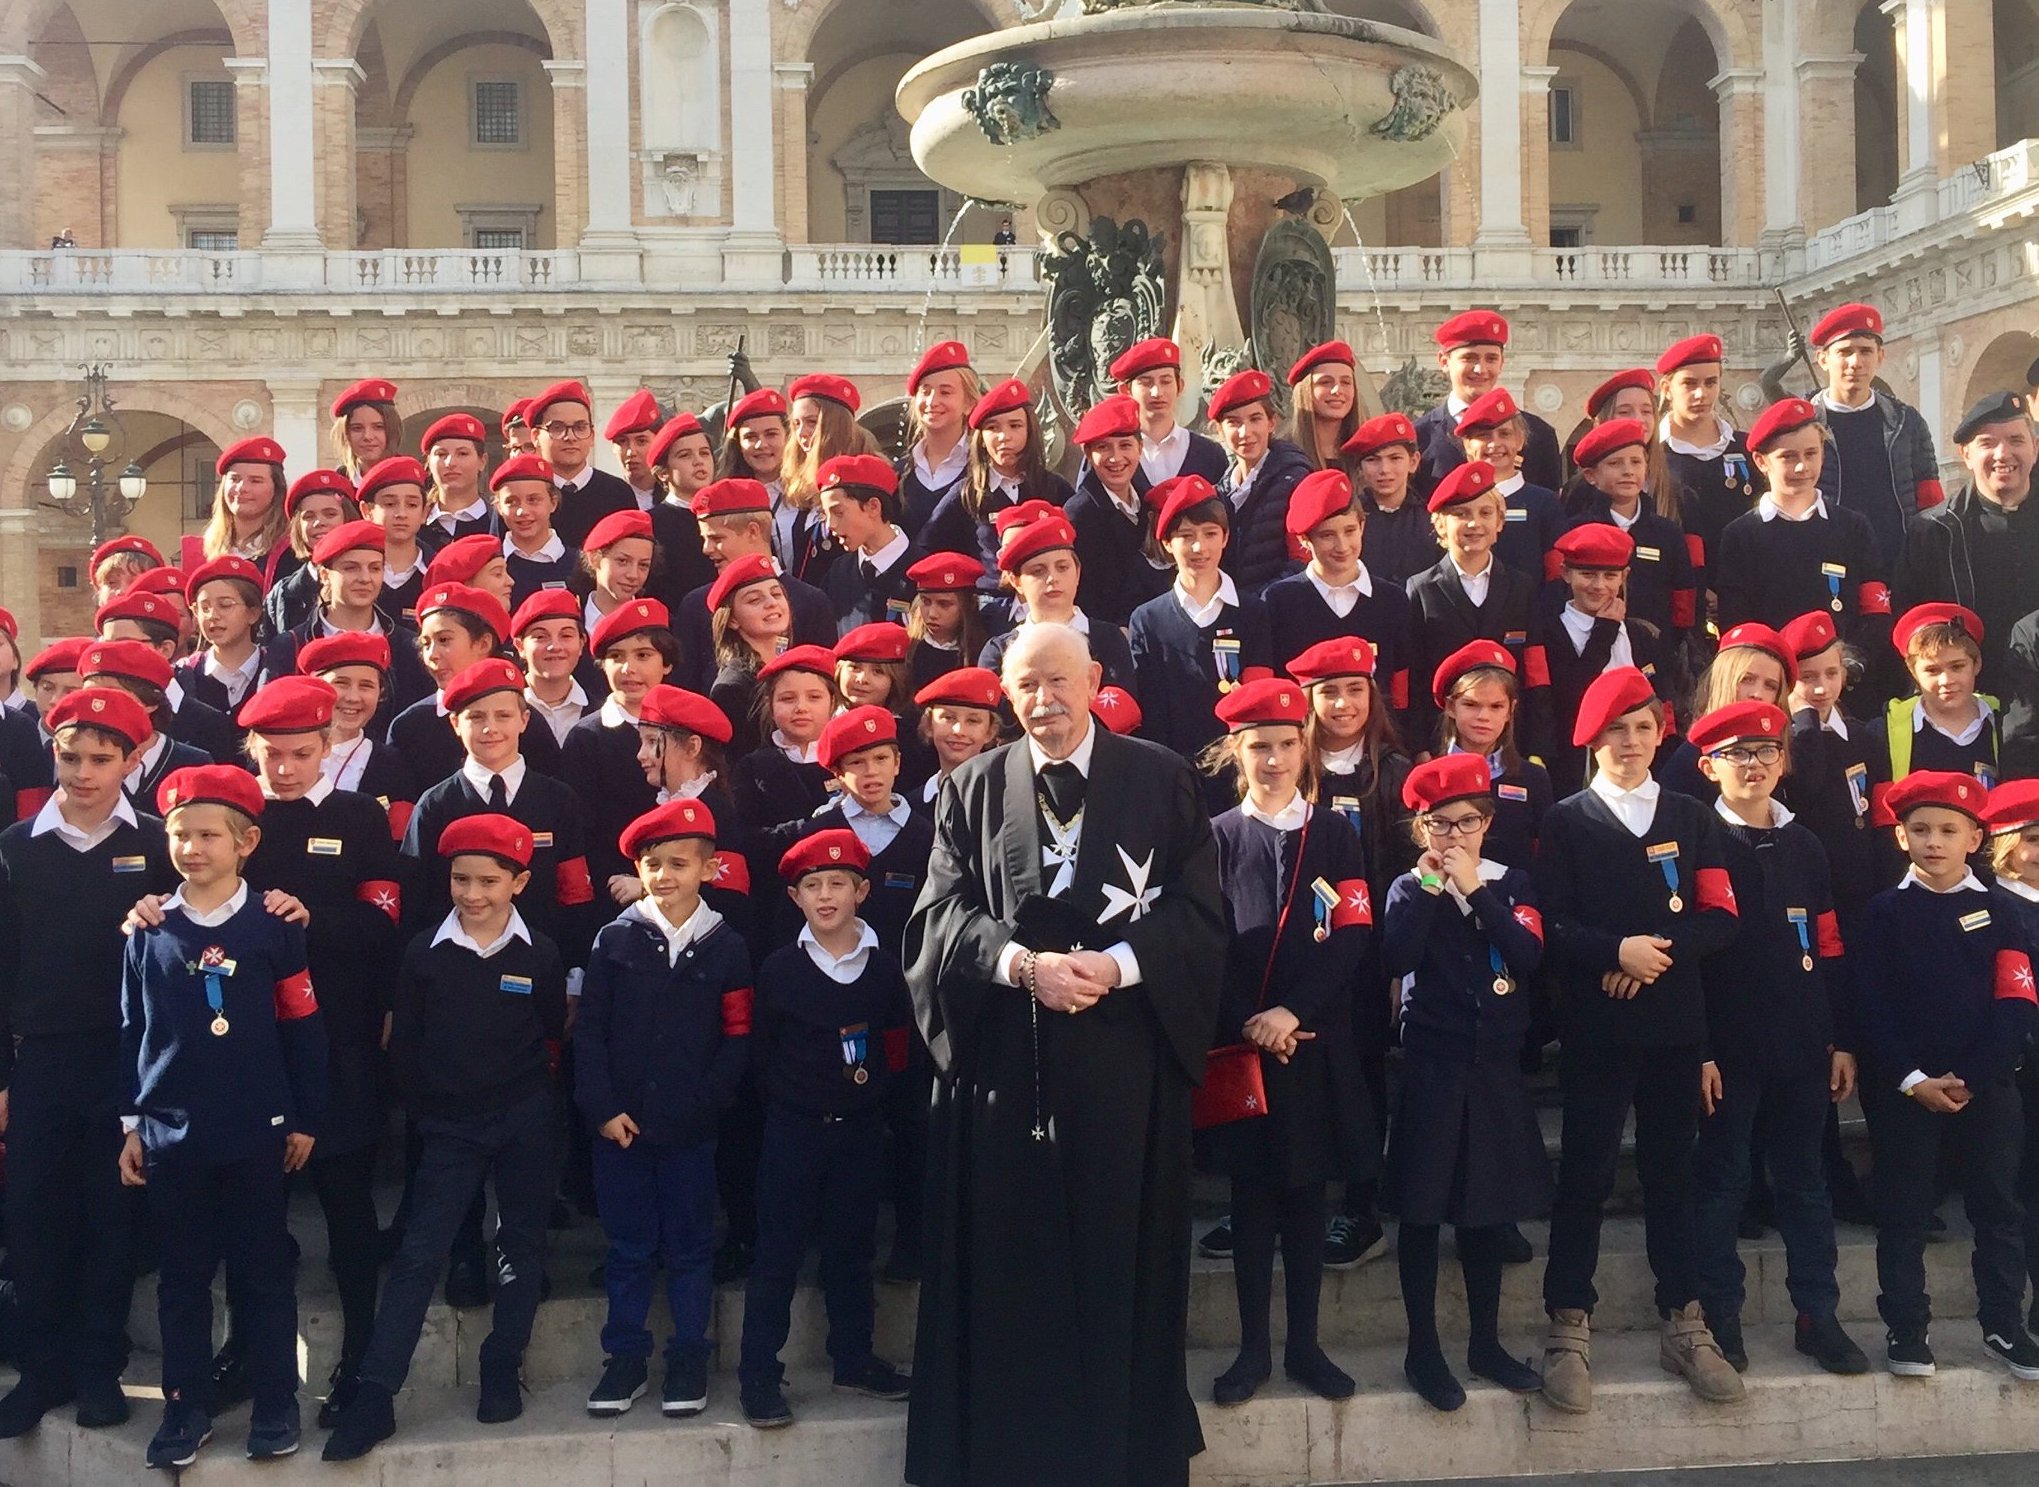 Peregrinación de la Orden de Malta al santuario de Loreto: más de 1.700 participantes venidos de toda Italia